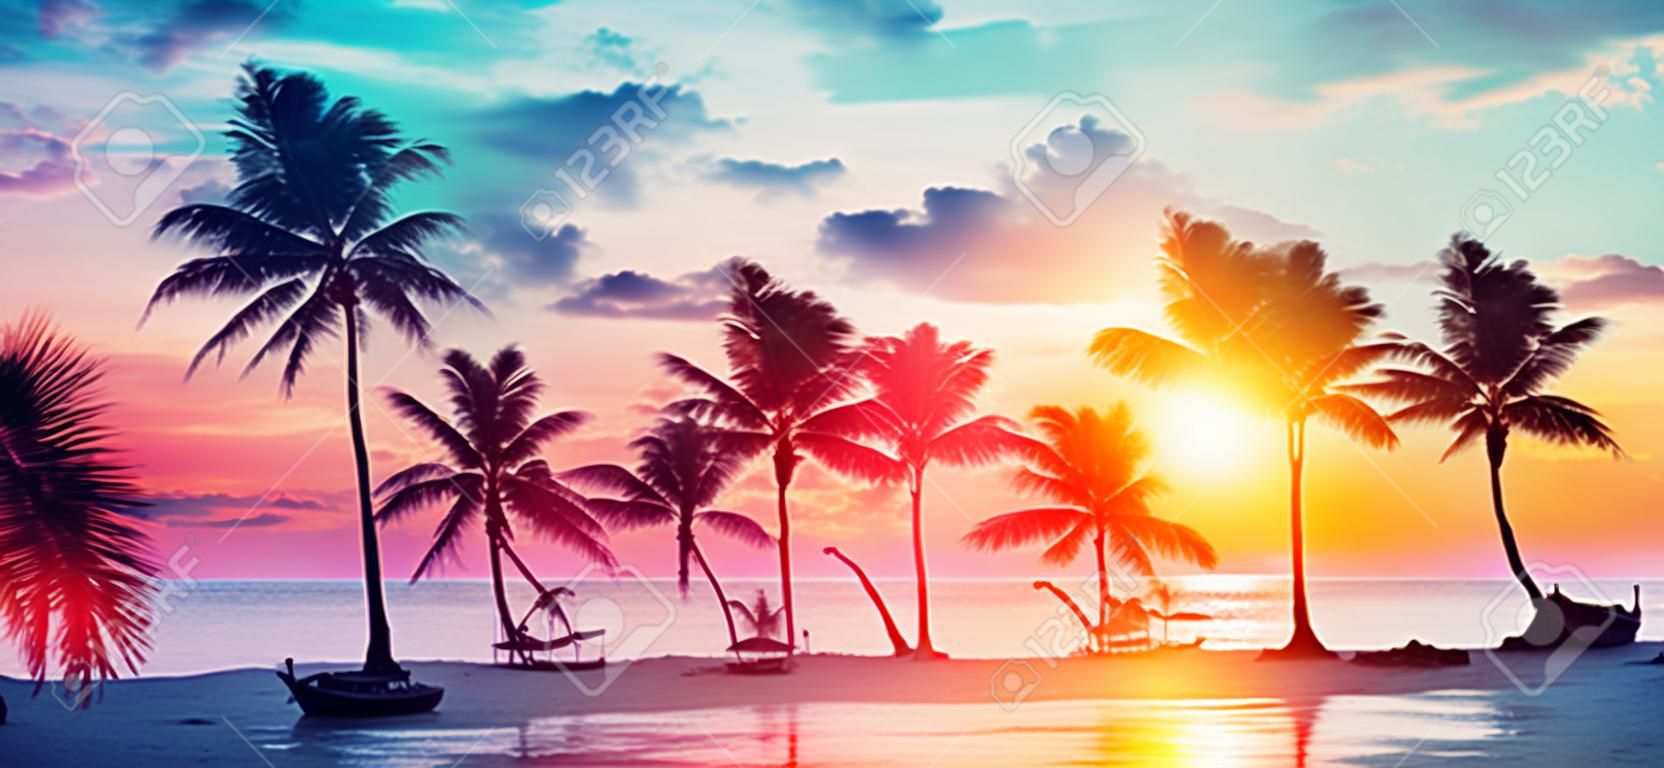 Sylwetki palm na tropikalnej plaży o zachodzie słońca - nowoczesne kolory vintage